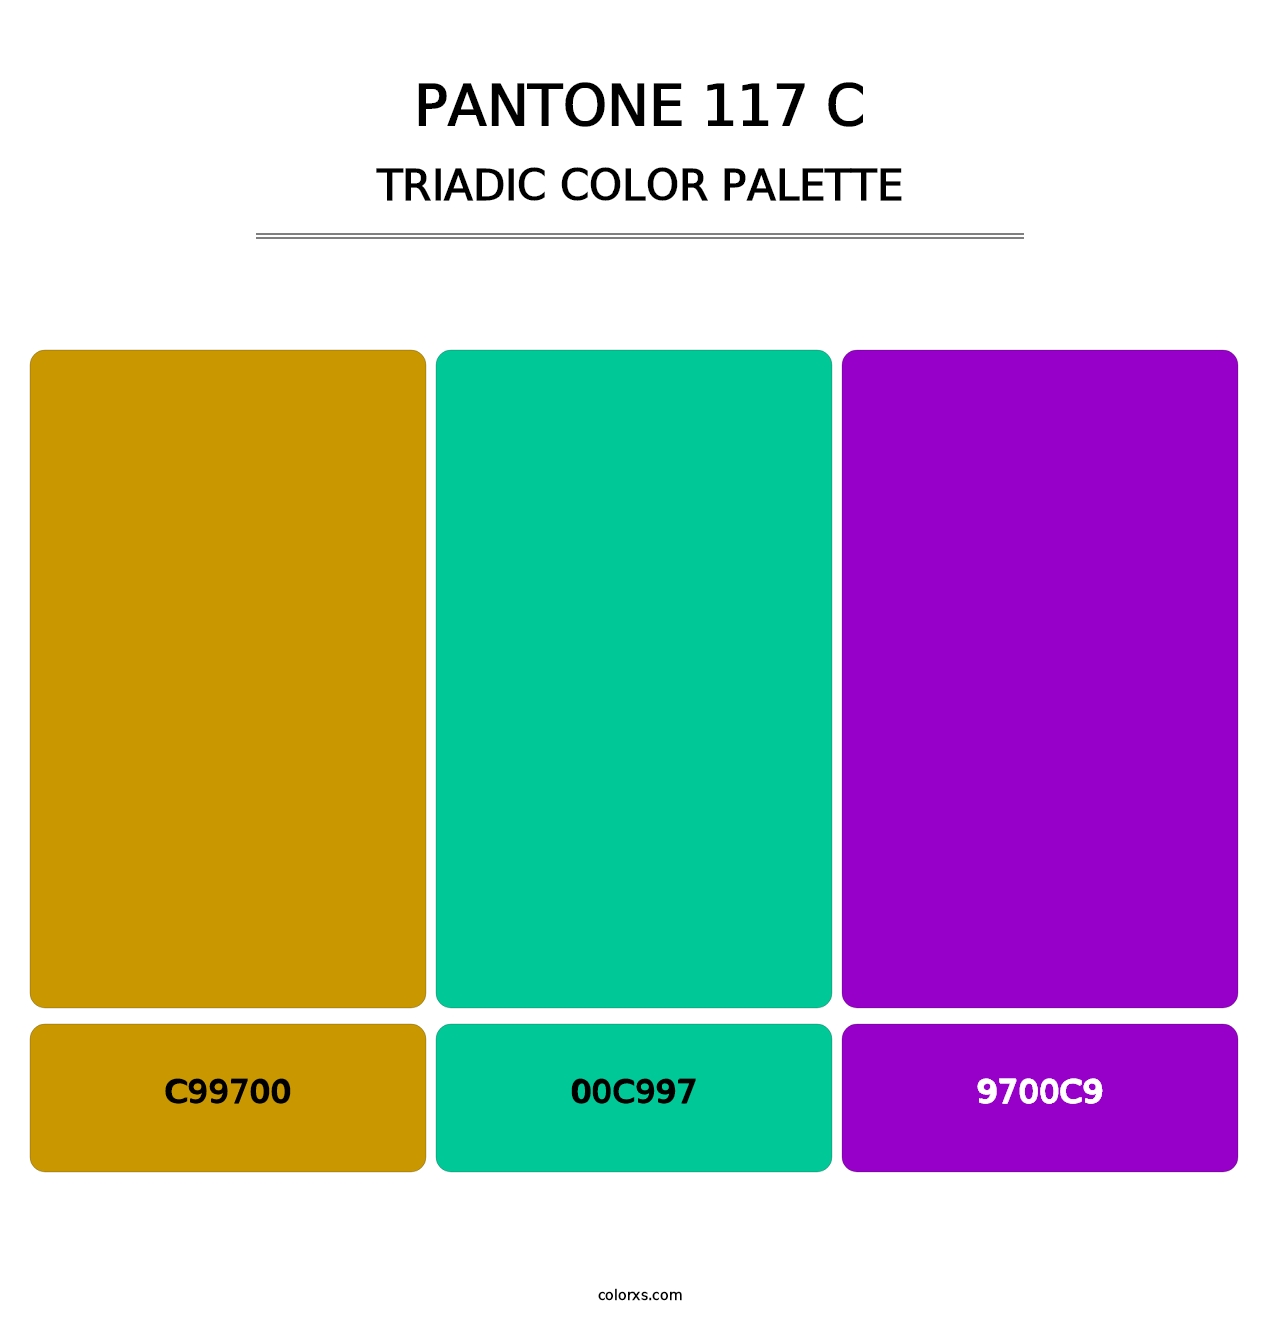 PANTONE 117 C - Triadic Color Palette